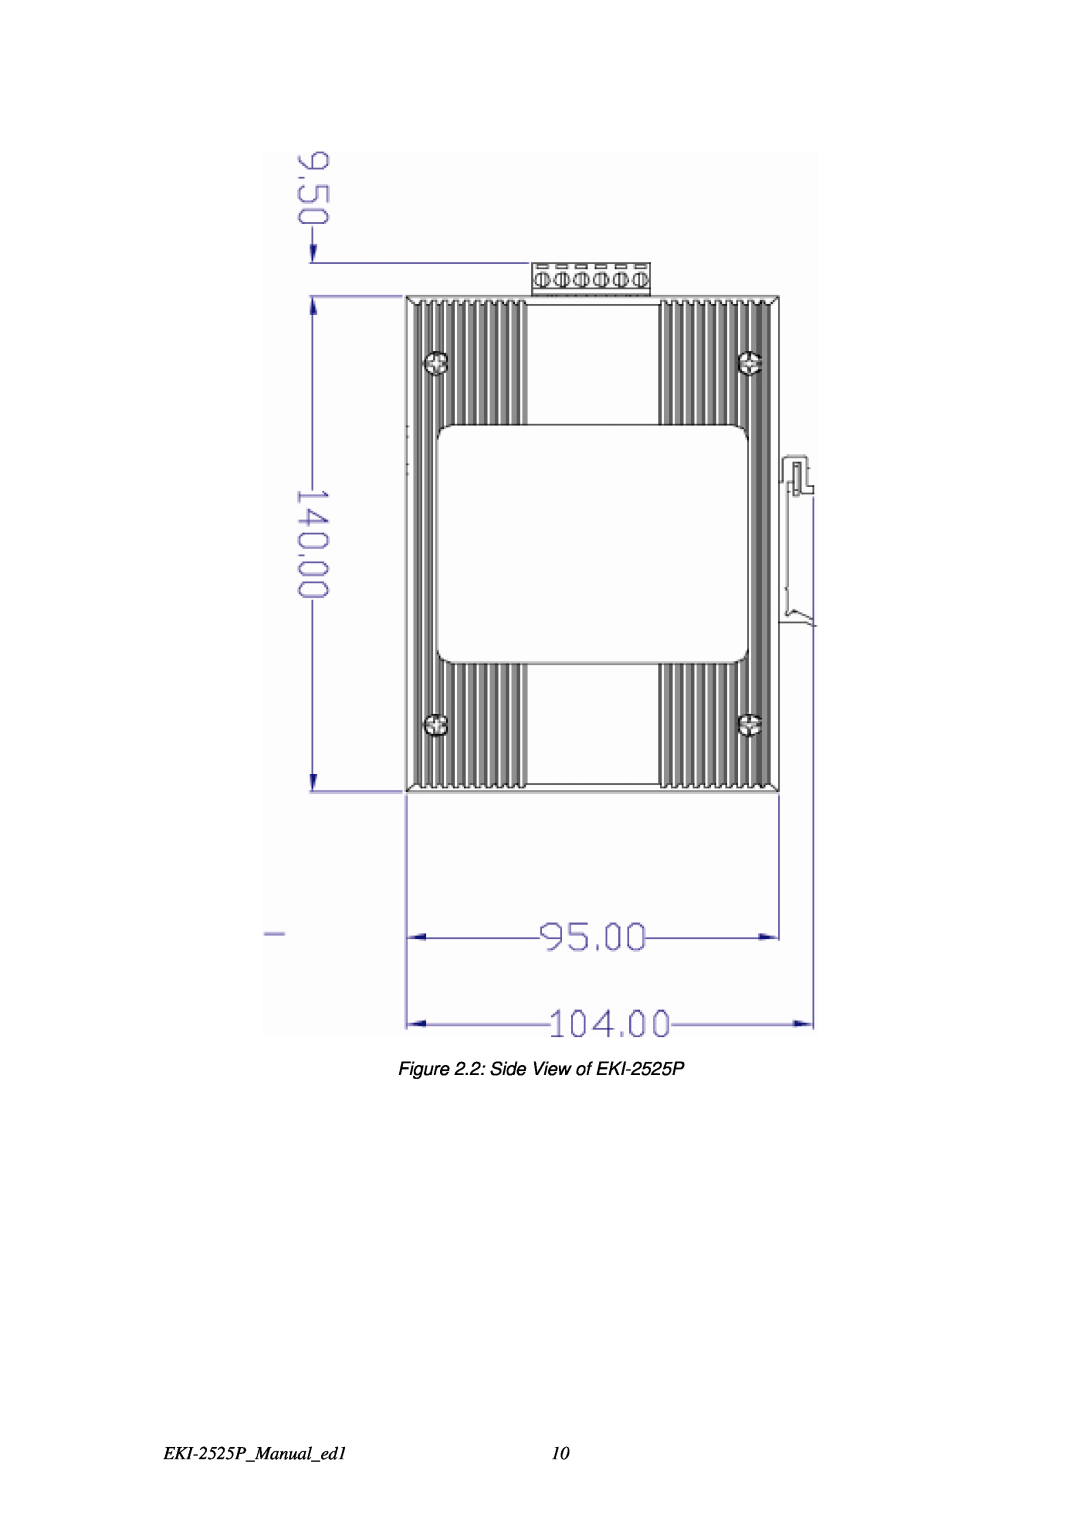 Advantech user manual 2 Side View of EKI-2525P, EKI-2525PManualed1 